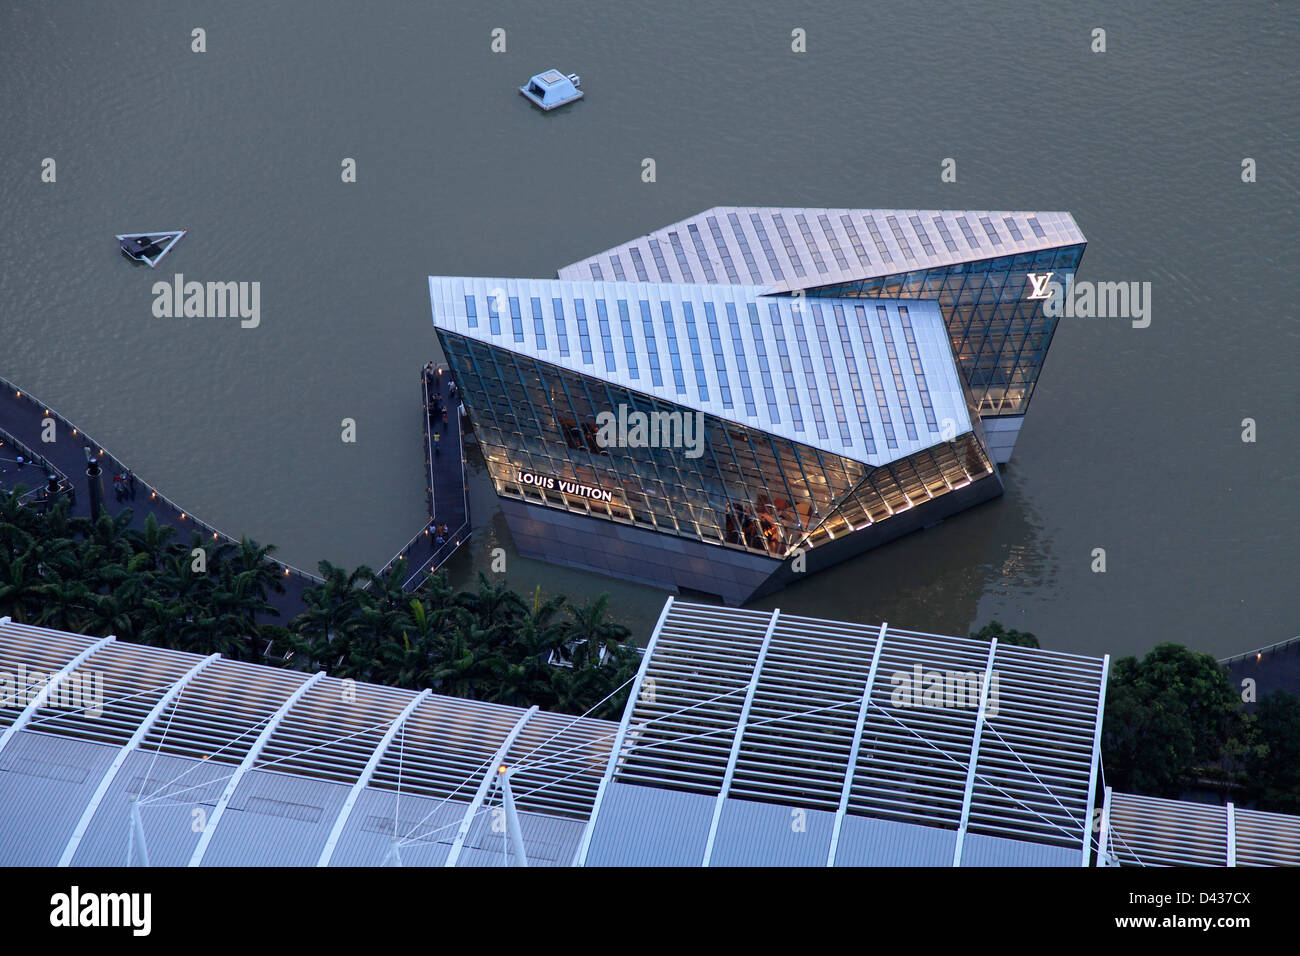 Louis vuitton singapore fotografías e imágenes de alta resolución - Alamy